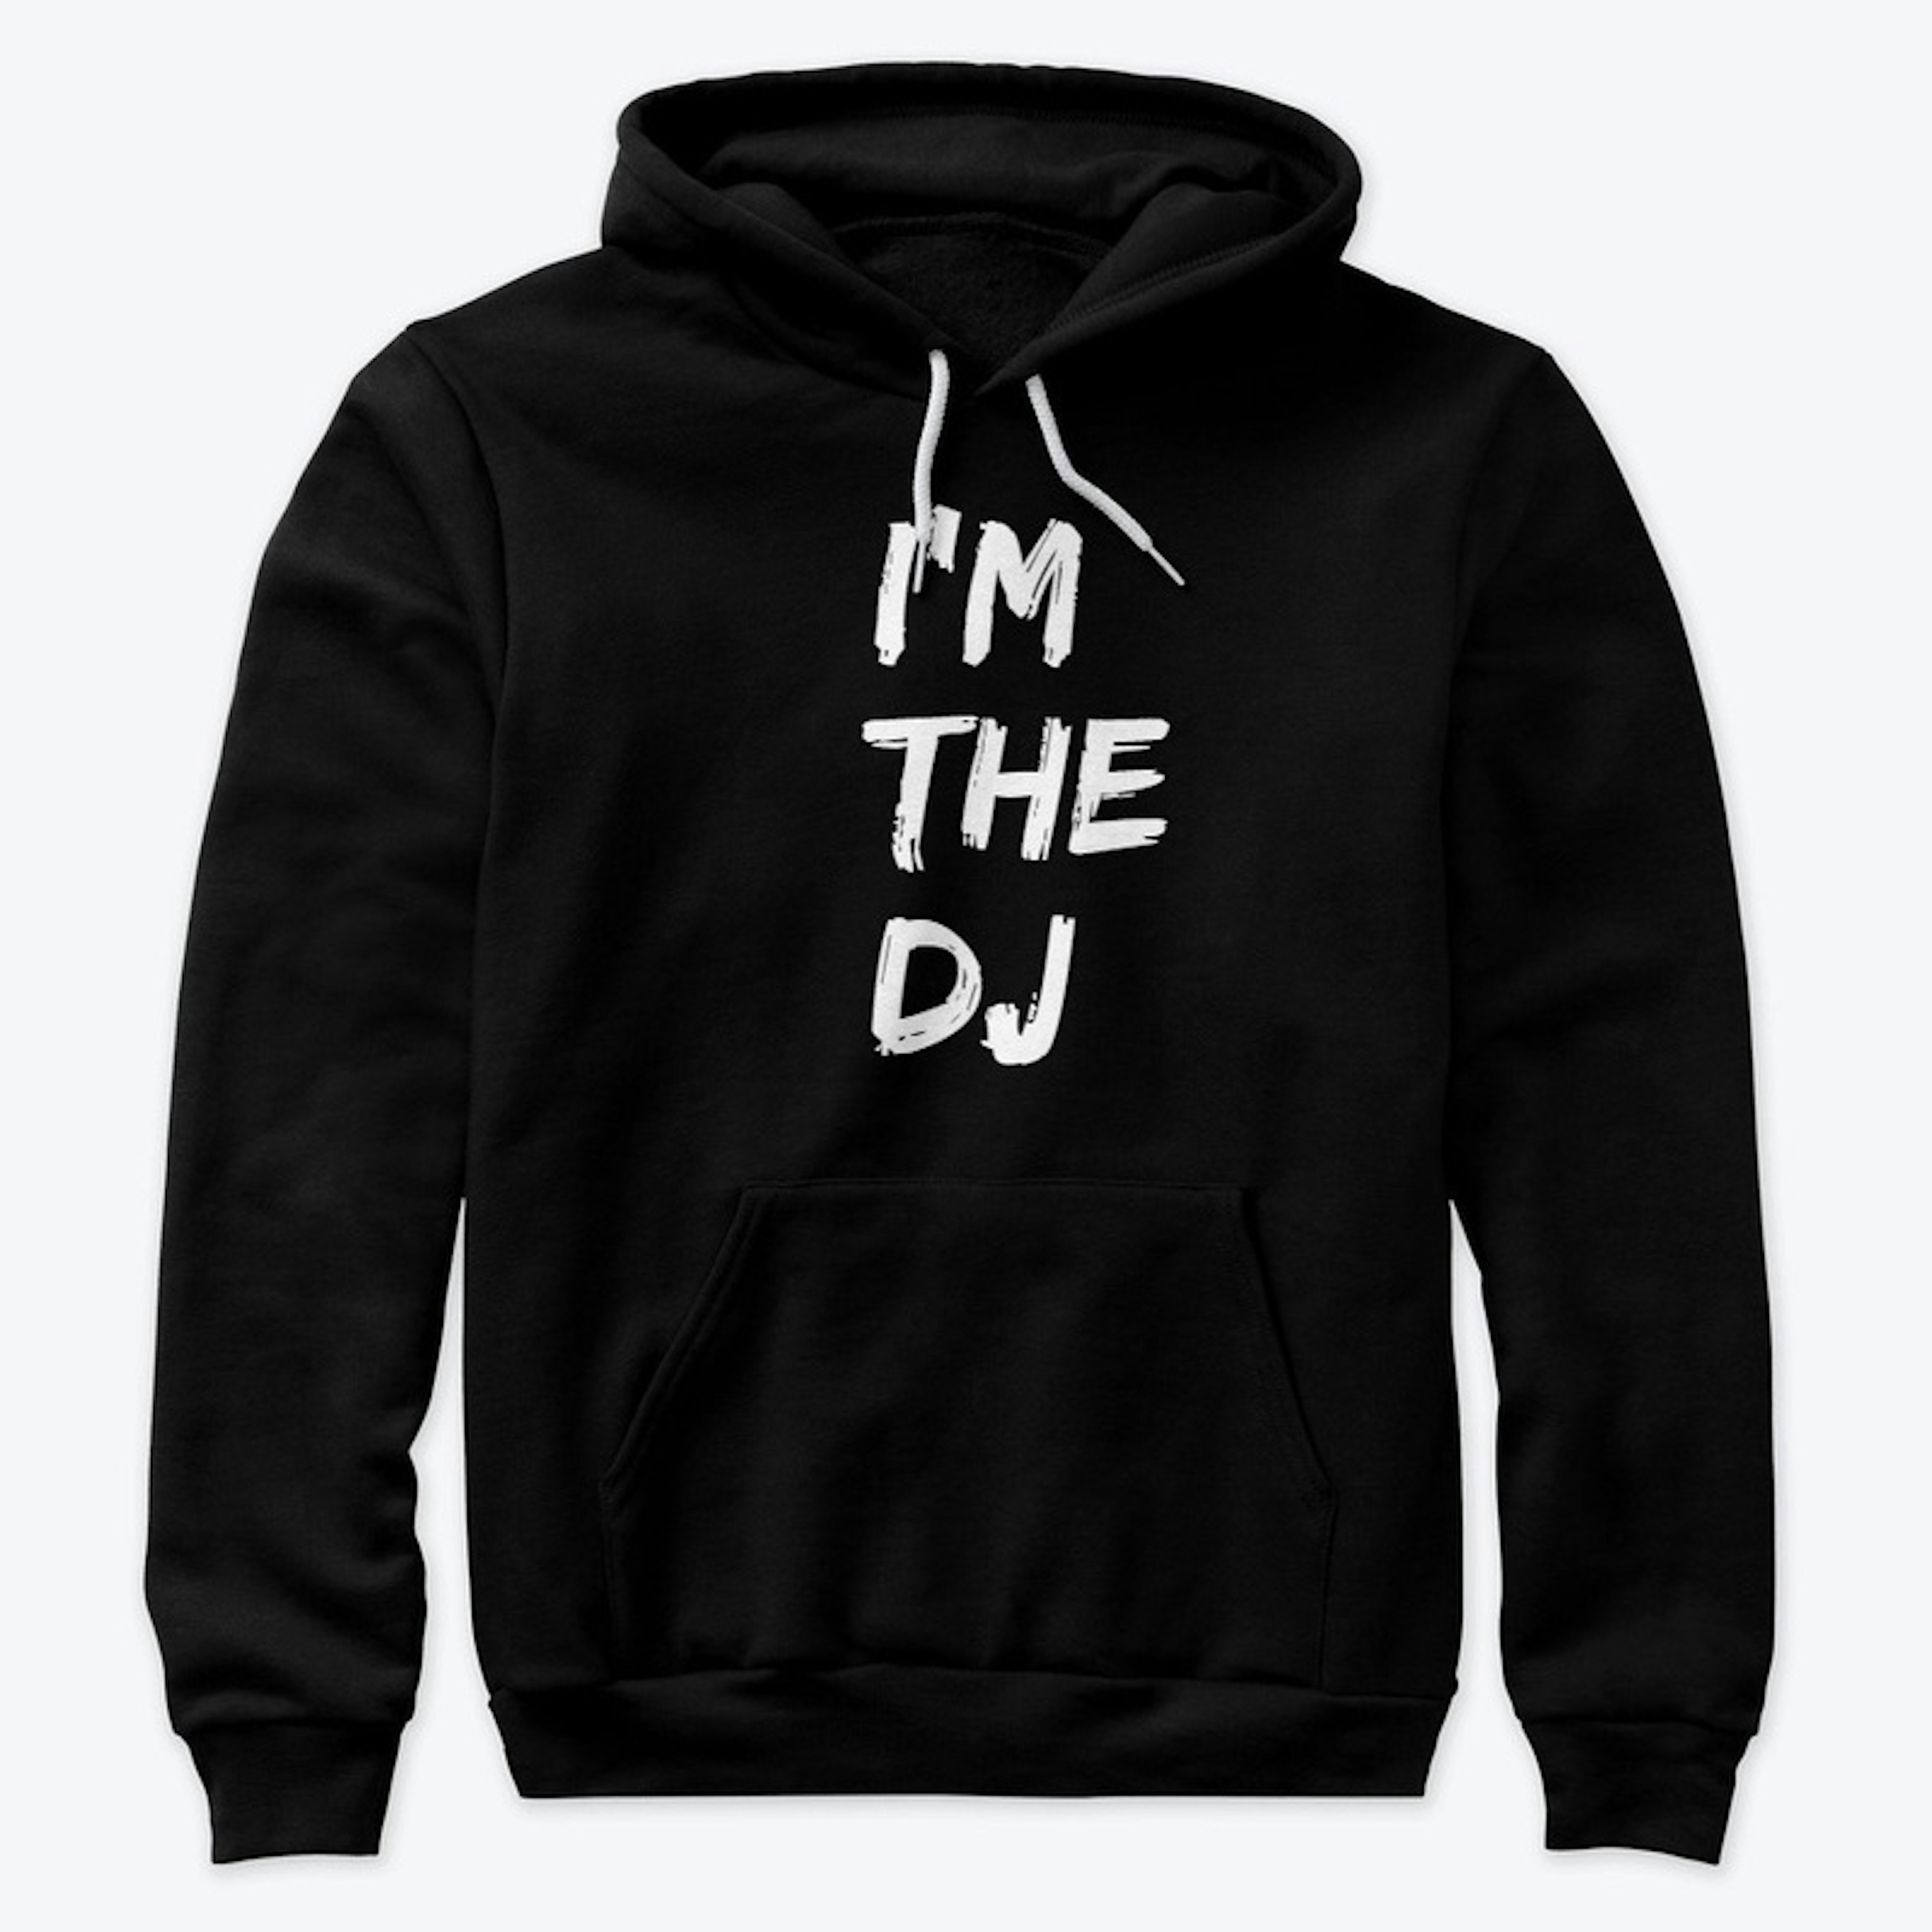 I'm The DJ